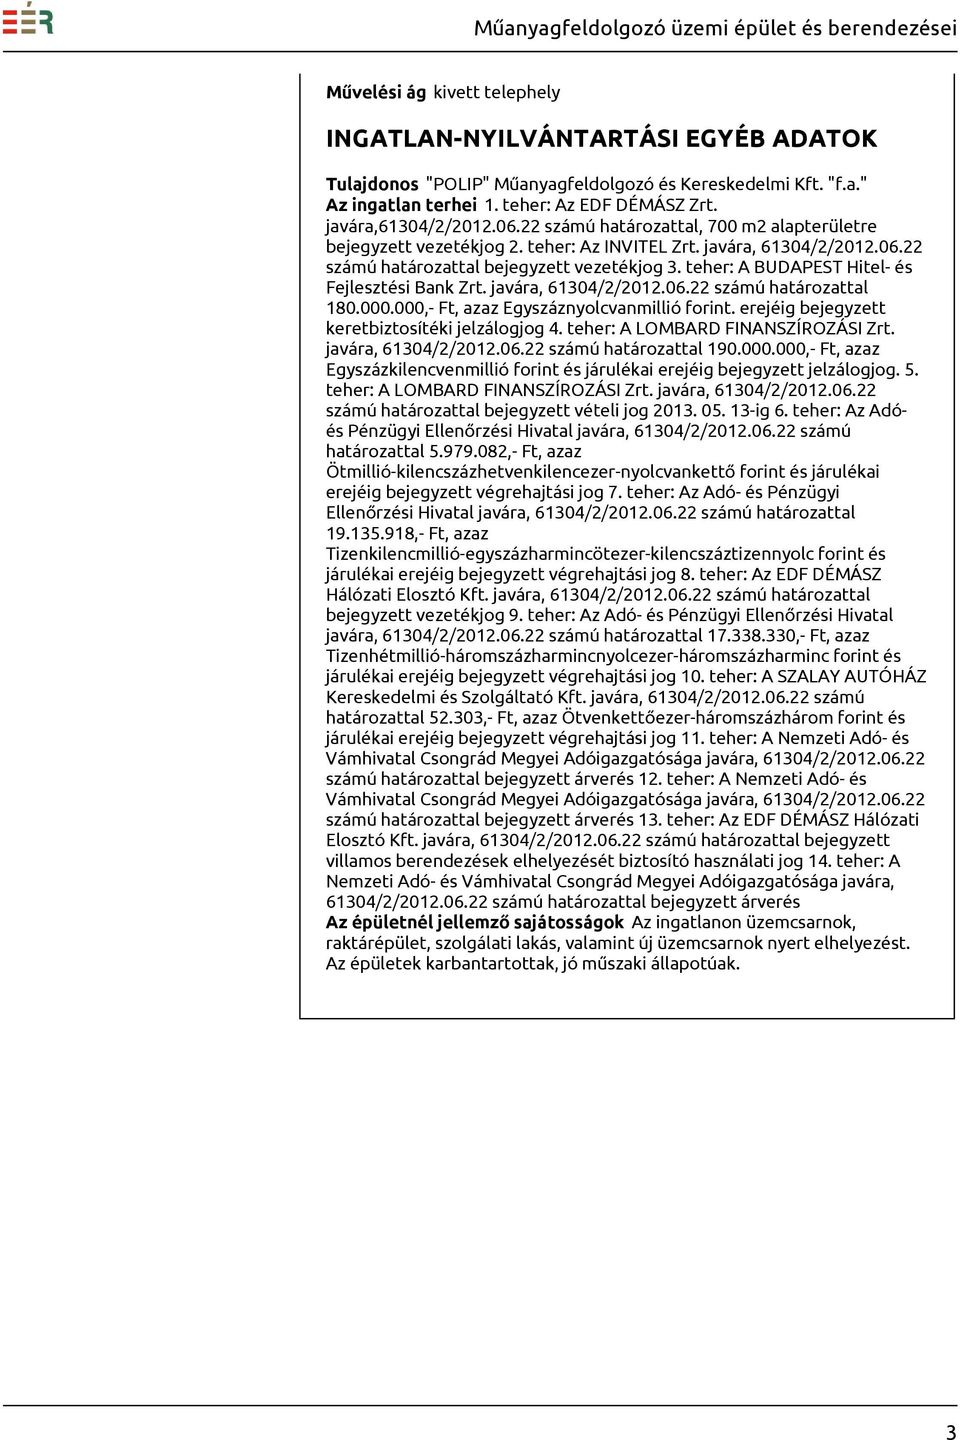 teher: A BUDAPEST Hitel- és Fejlesztési Bank Zrt. javára, 61304/2/2012.06.22 számú határozattal 180.000.000,- Ft, azaz Egyszáznyolcvanmillió forint. erejéig bejegyzett keretbiztosítéki jelzálogjog 4.